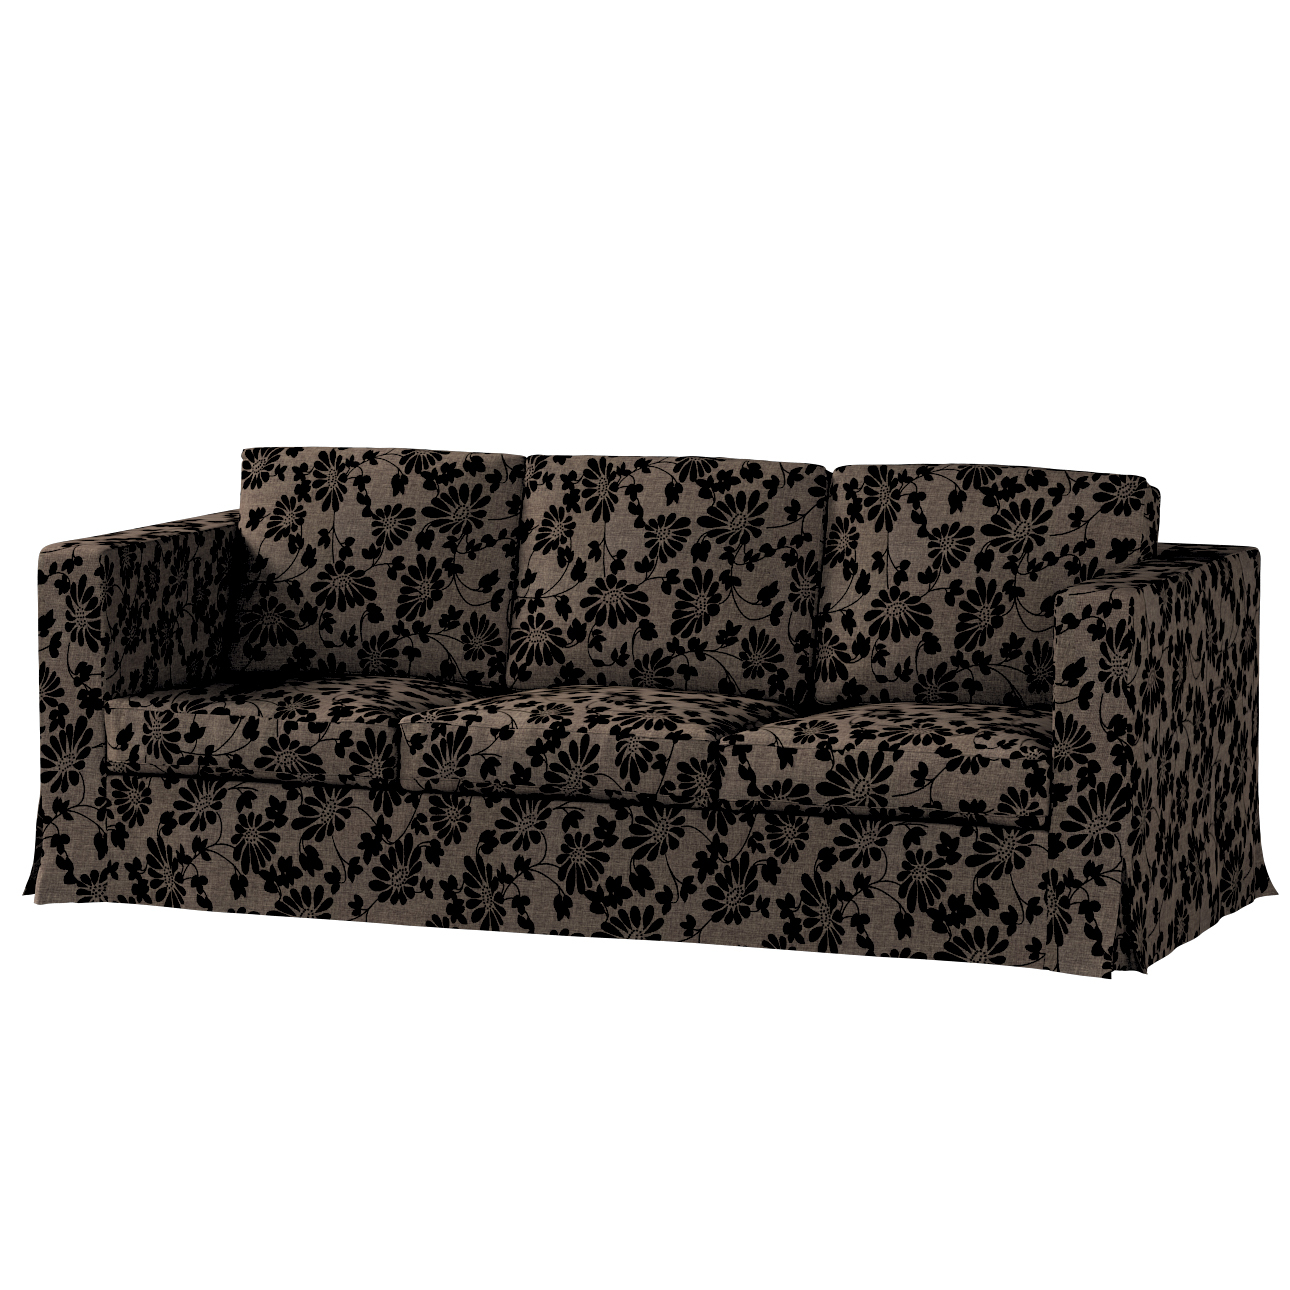 Bezug für Karlanda 3-Sitzer Sofa nicht ausklappbar, lang, braun-schwarz, Be günstig online kaufen